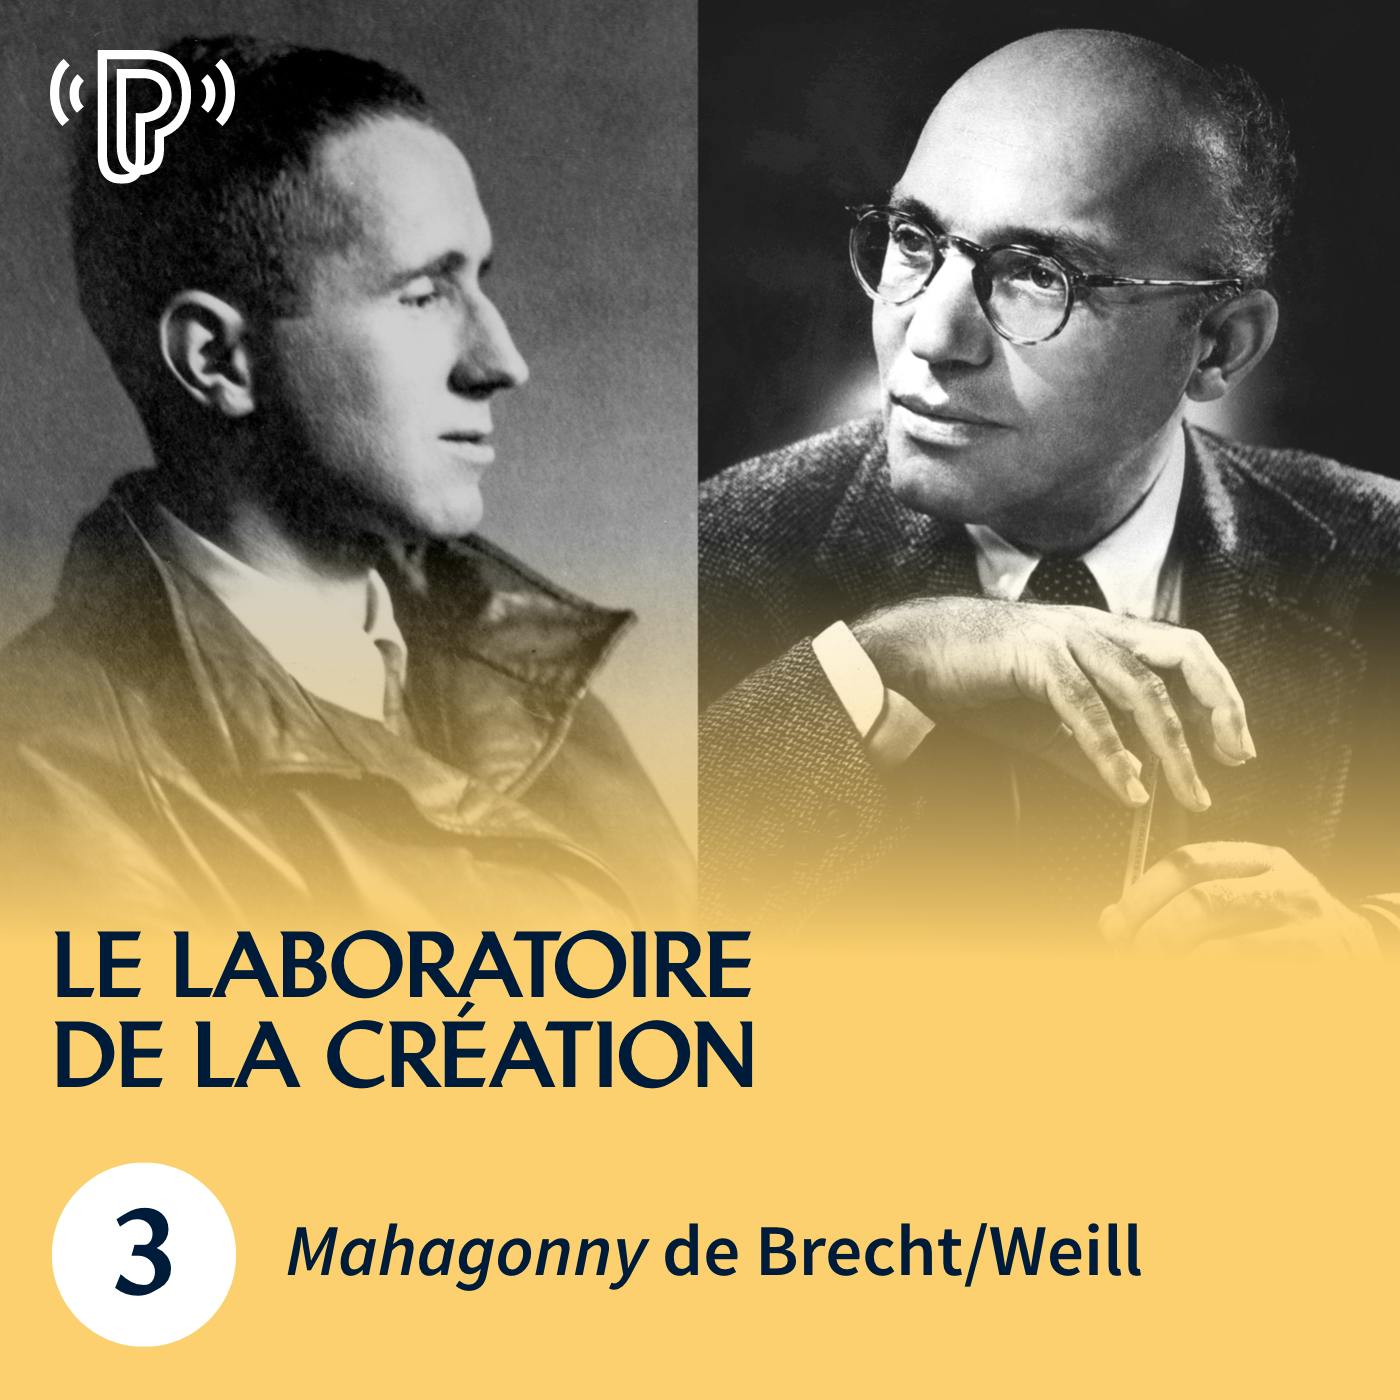 Mahagonny de Brecht/Weill | Le Laboratoire de la création #3